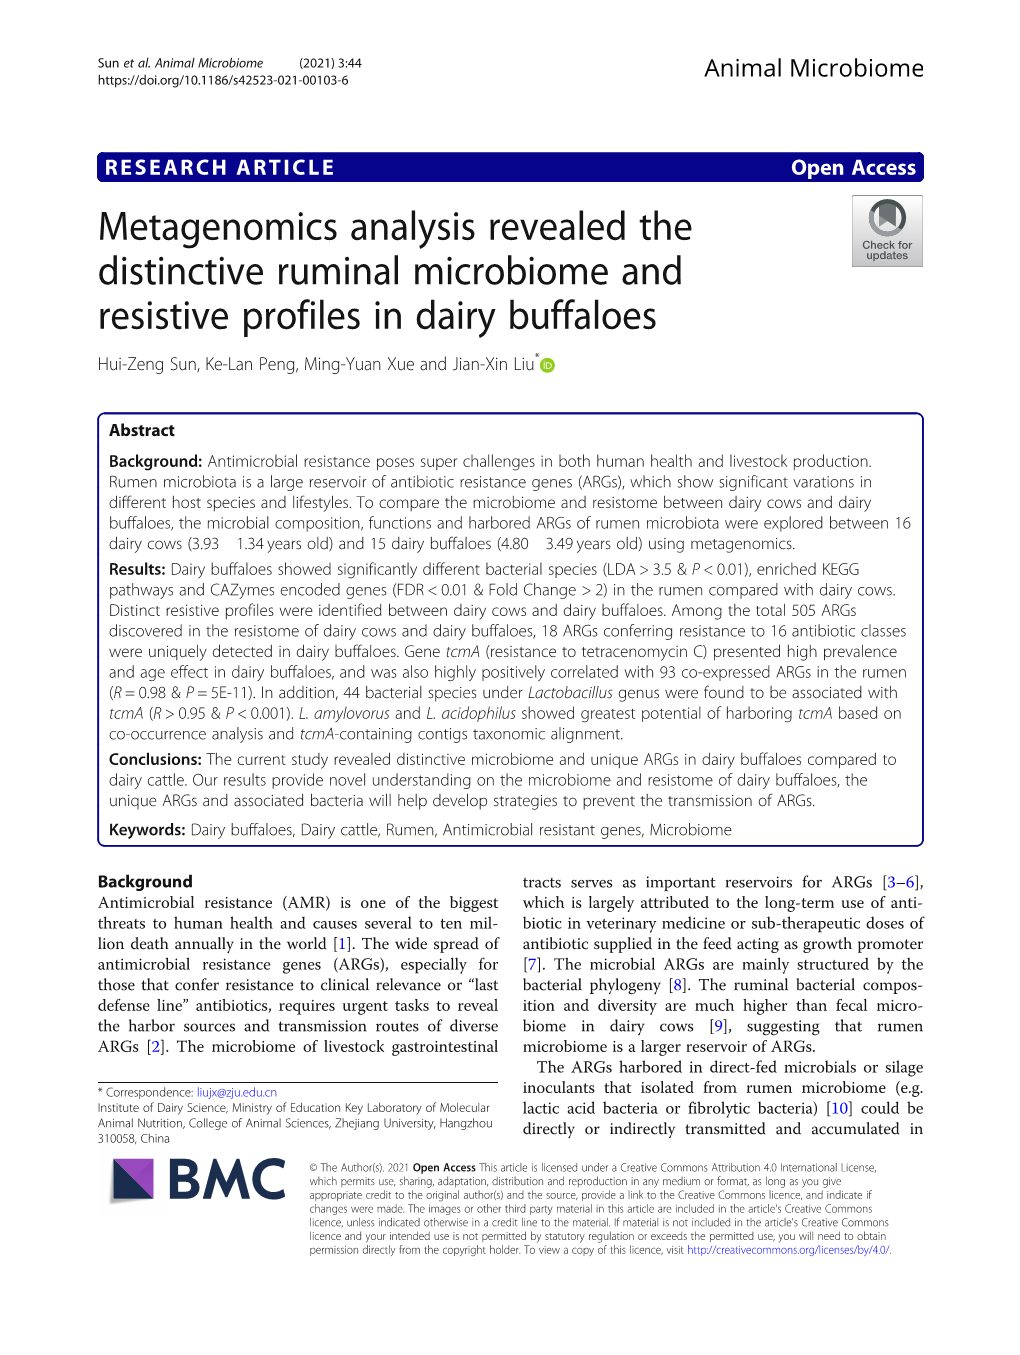 Metagenomics Analysis Revealed the Distinctive Ruminal Microbiome and Resistive Profiles in Dairy Buffaloes Hui-Zeng Sun, Ke-Lan Peng, Ming-Yuan Xue and Jian-Xin Liu*